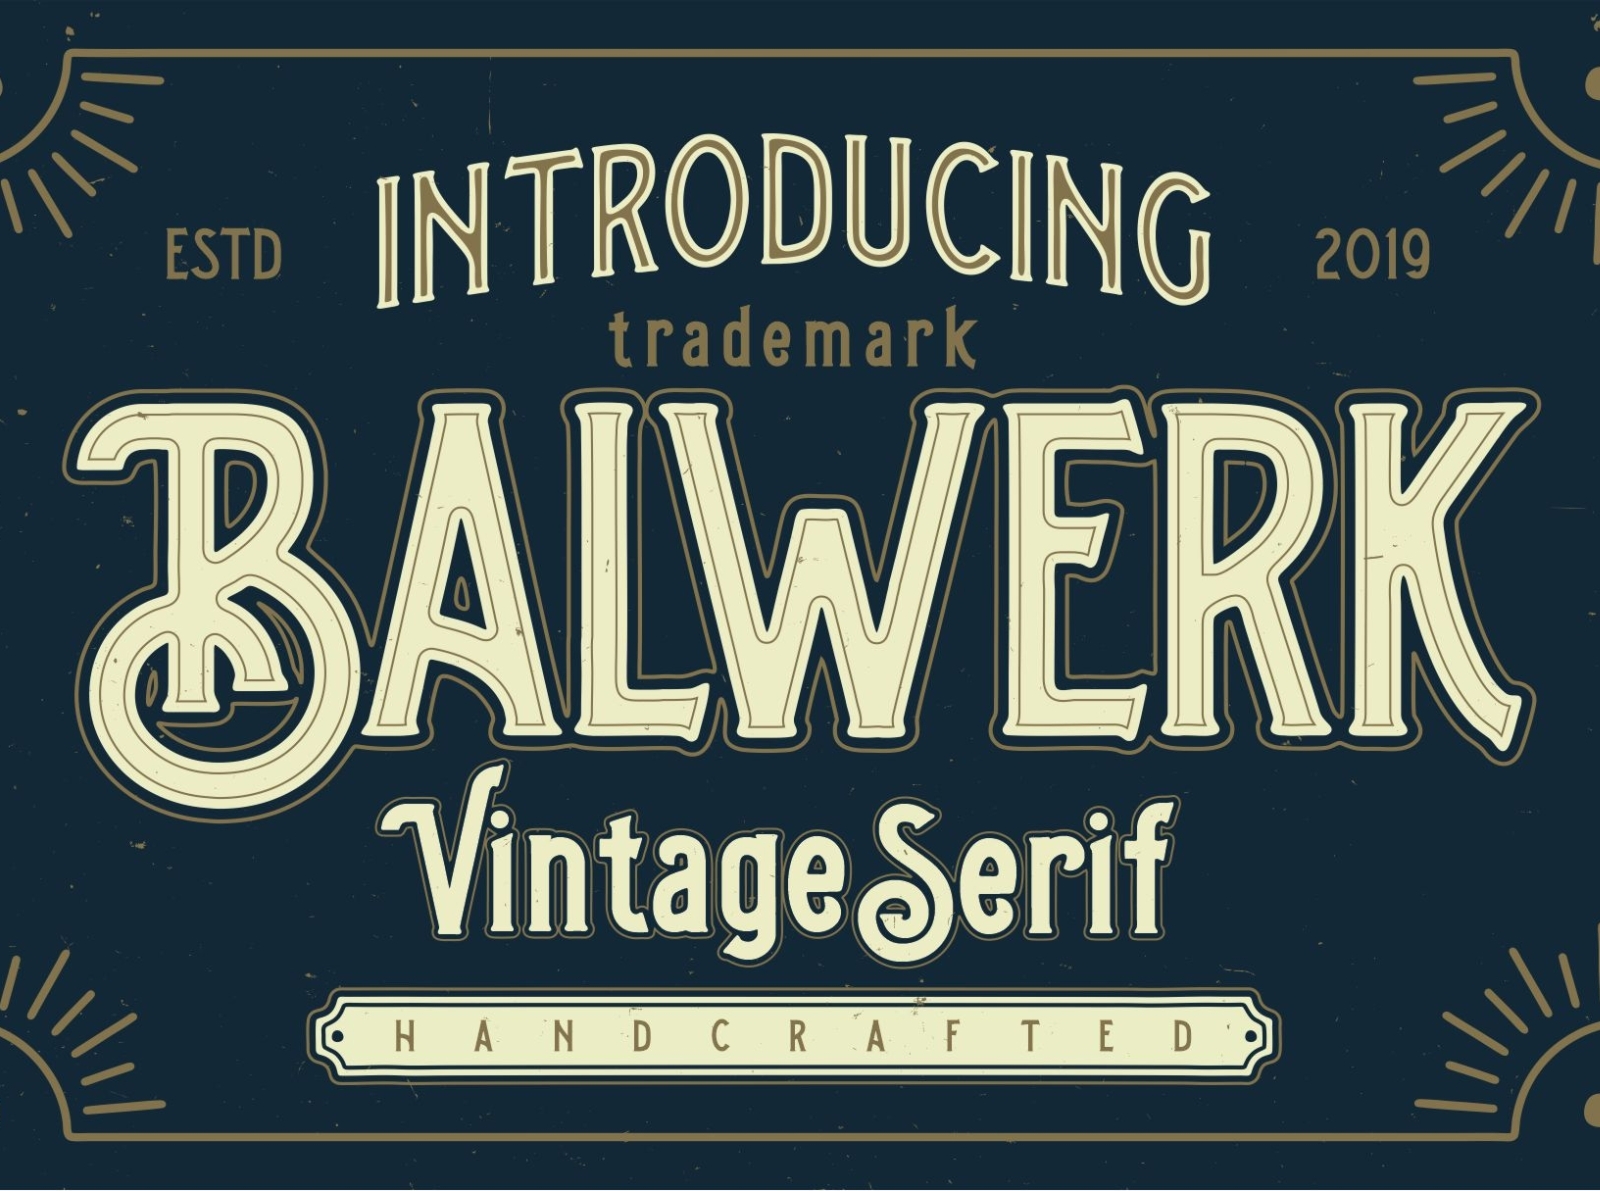 Balwerk - Vintage Serif by Benawa Type on Dribbble